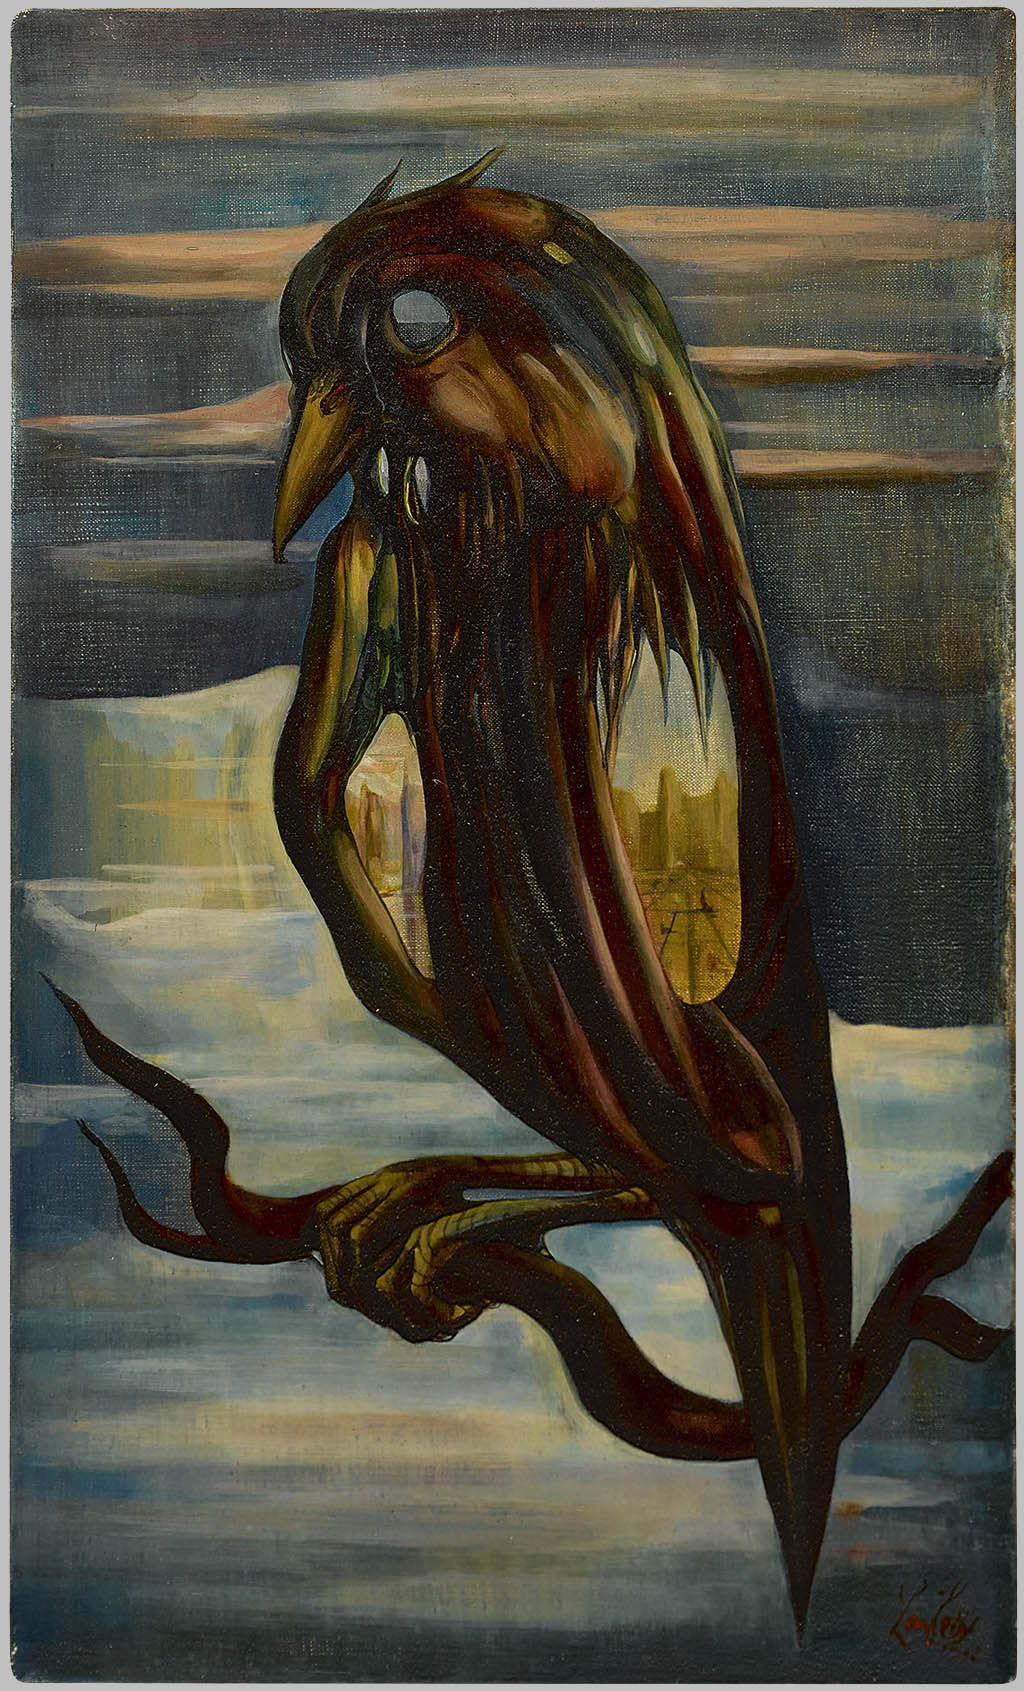 Leon Kelly - Winter Bird - 1942 oil on canvas